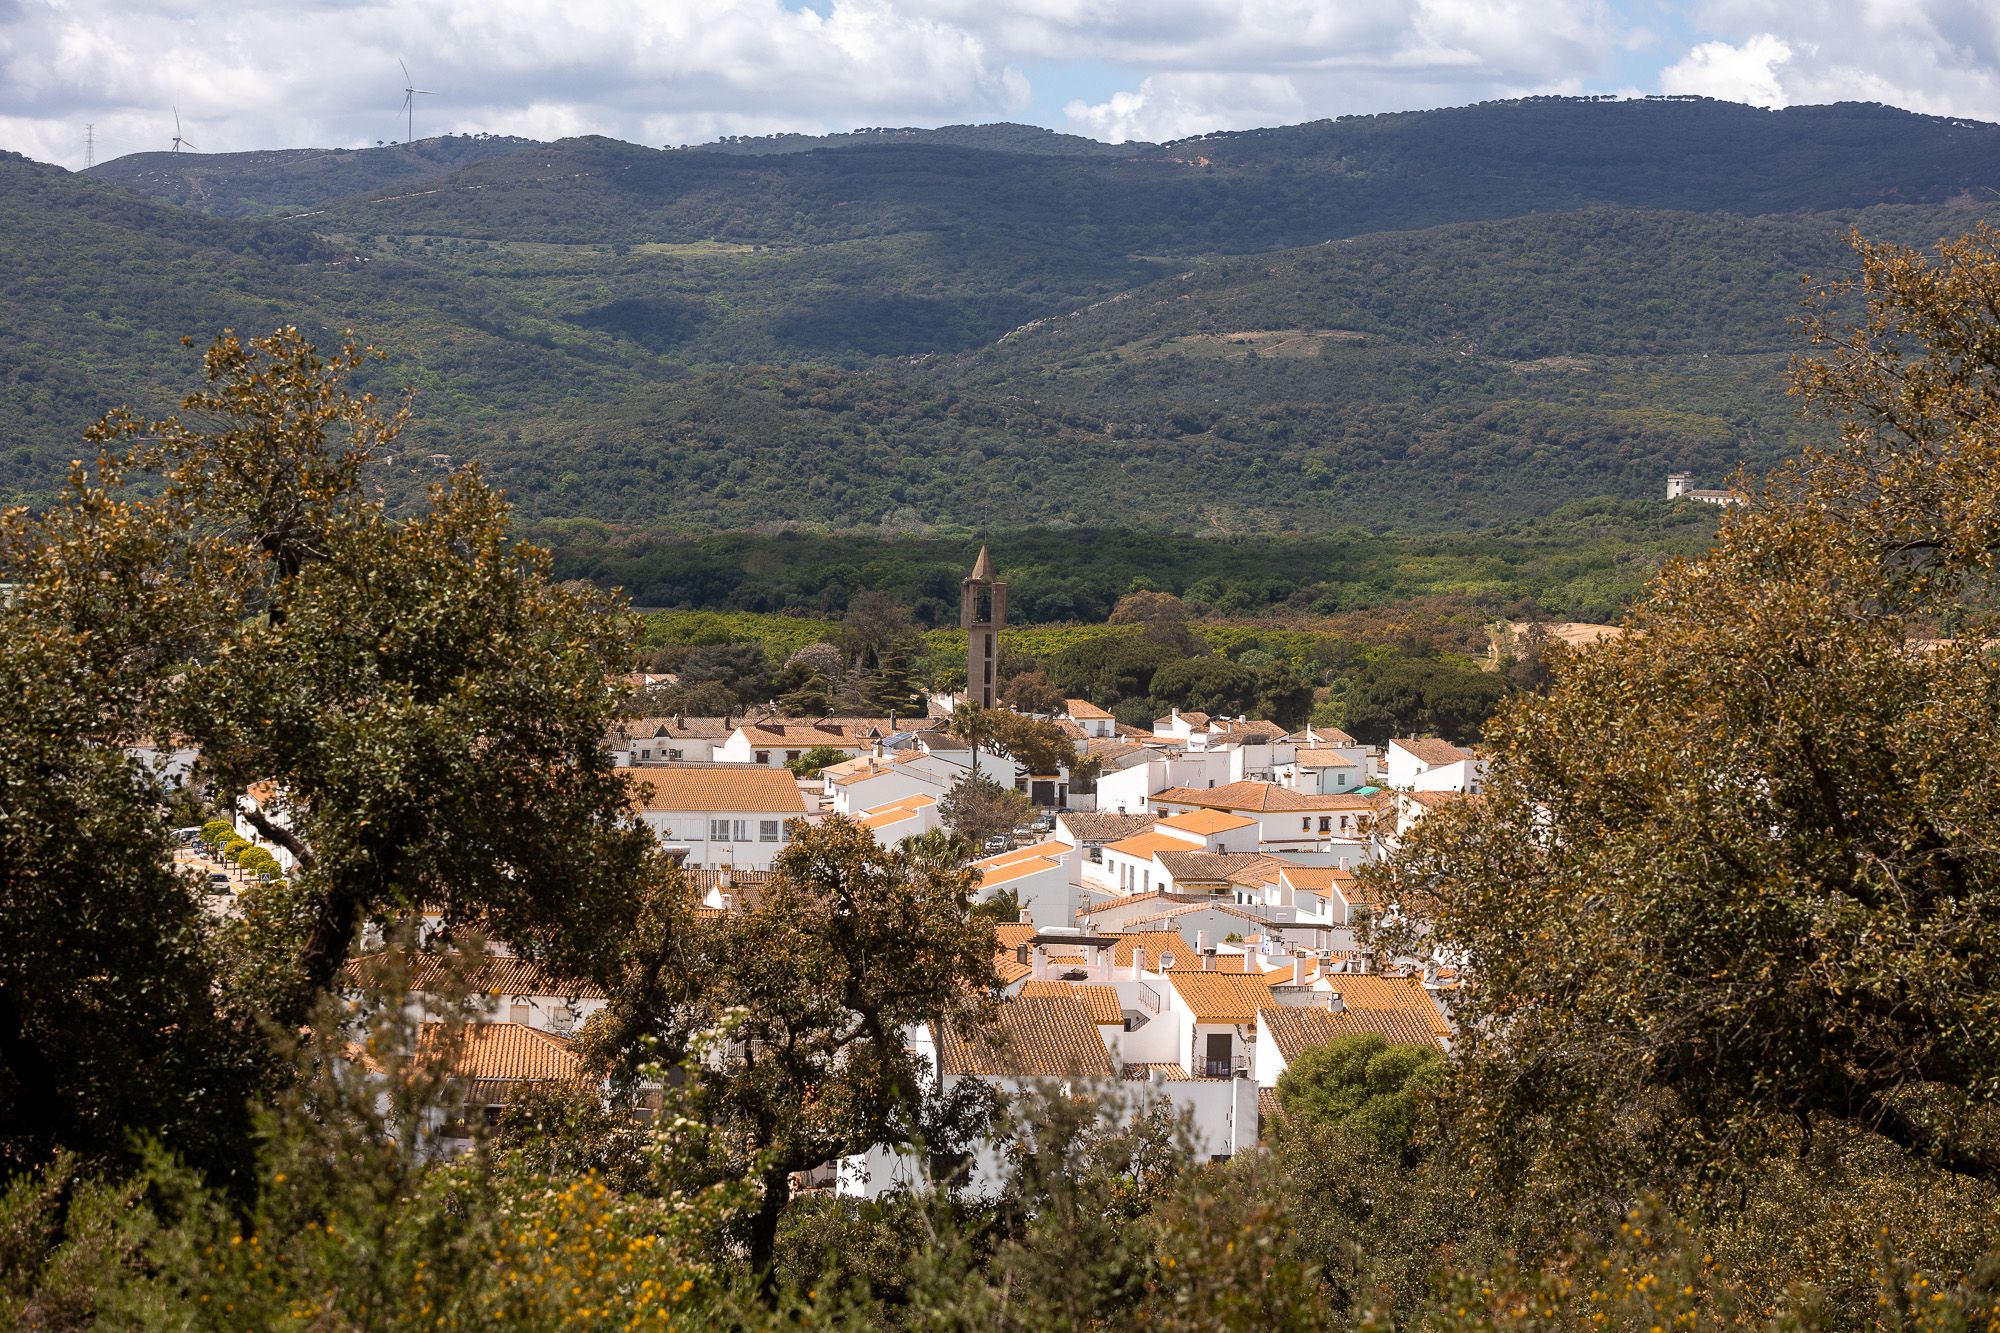 Vista del pueblo nuevo desde el Cerro del Moro.